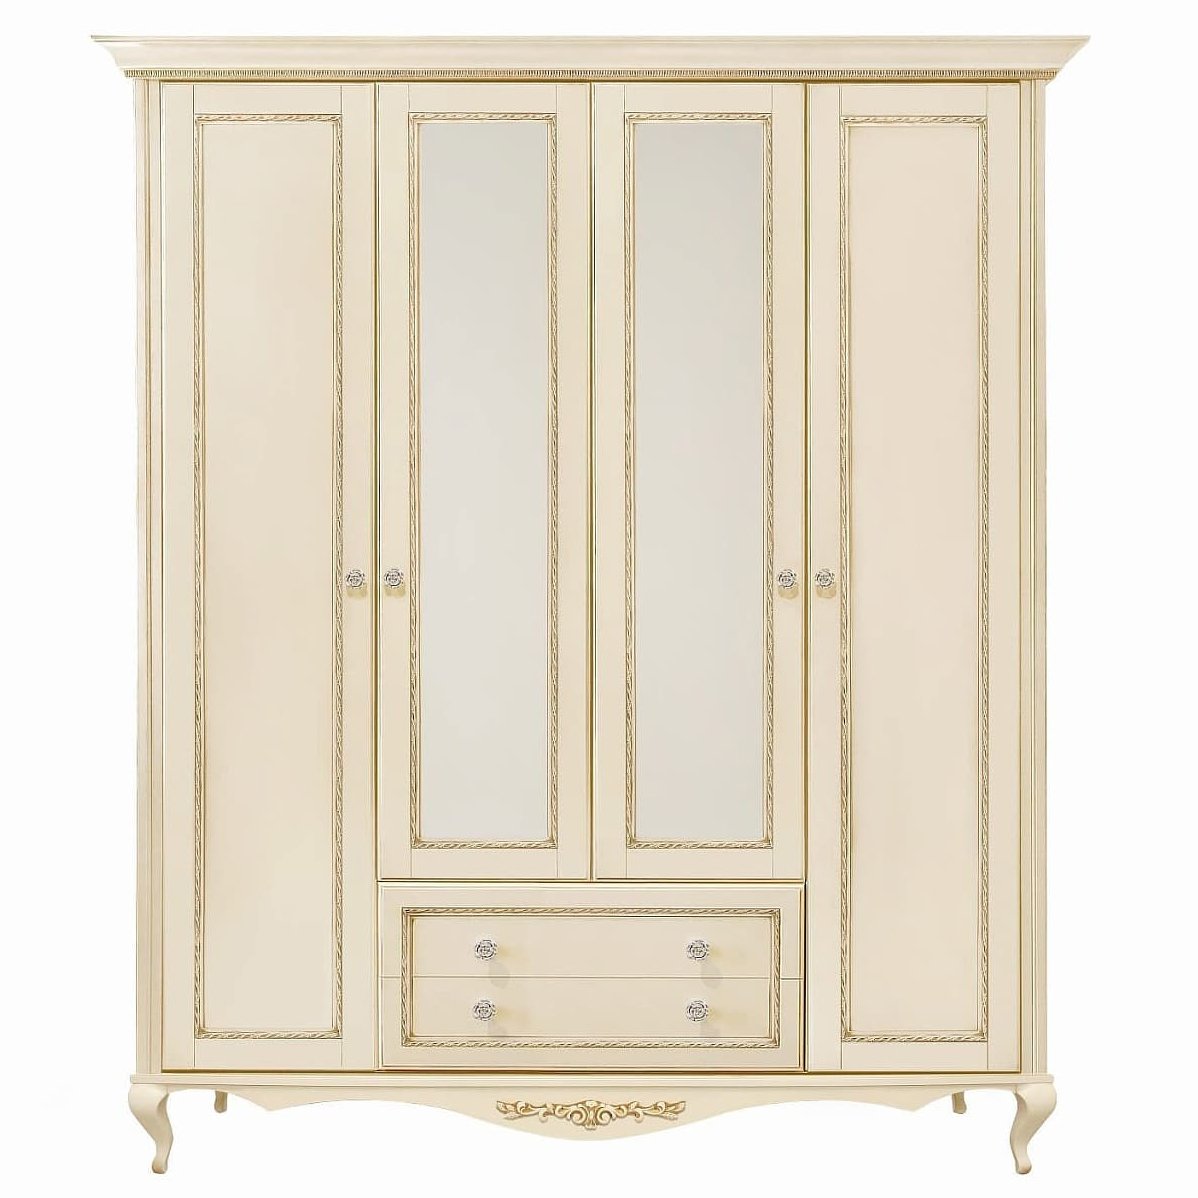 Шкаф платяной Timber Неаполь, 4-х дверный с зеркалами 204x65x227 см, цвет: ваниль с золотом (Т-524/VO)Т-524